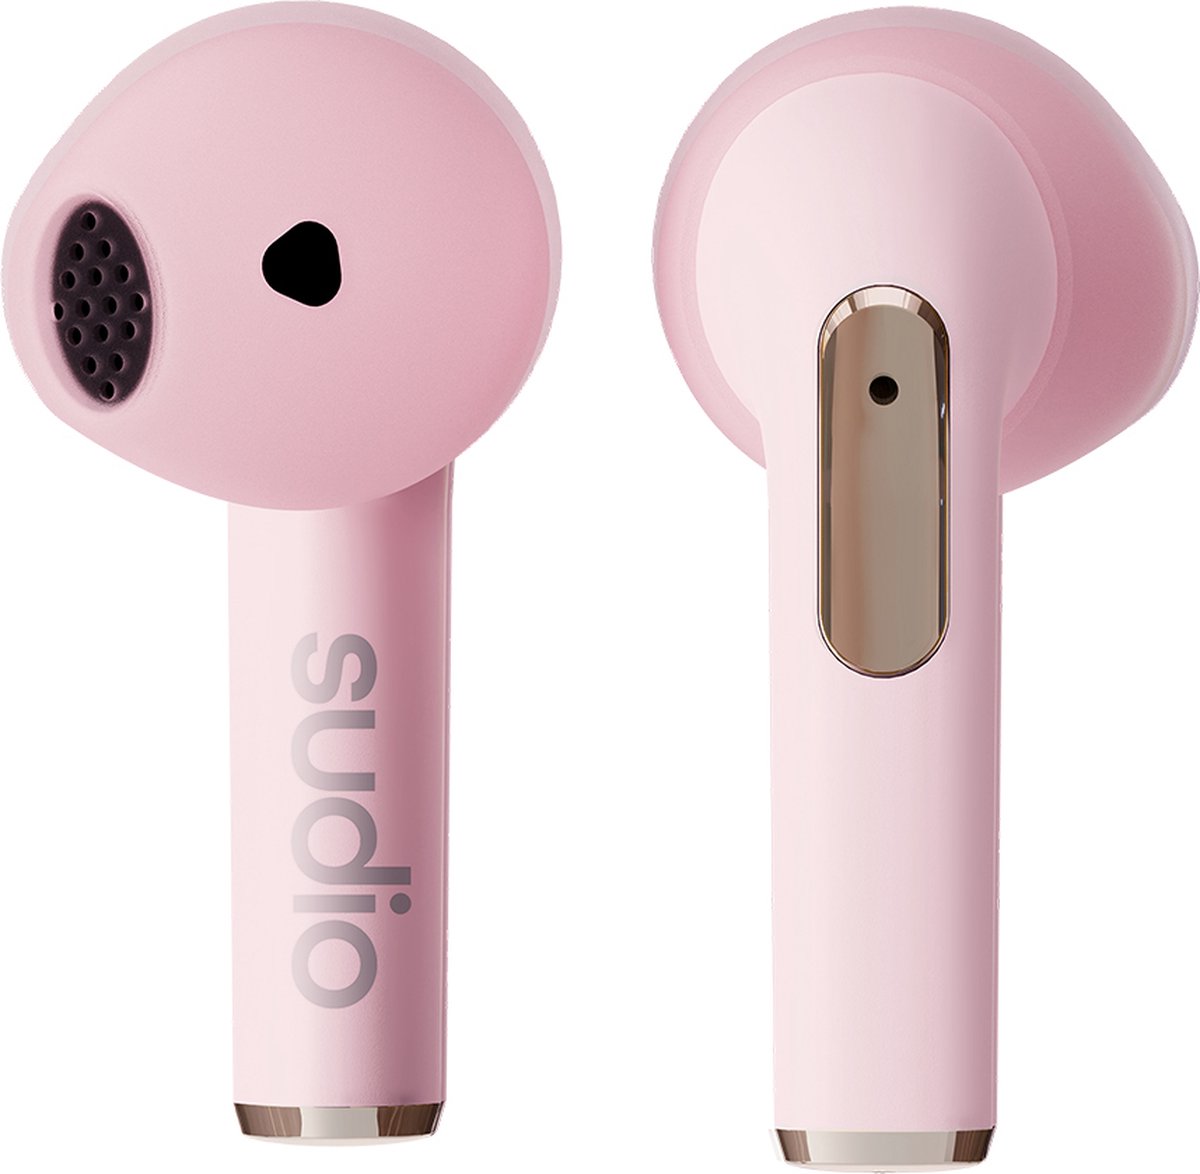 Sudio N2 in-ear true wireless earphones - draadloze oordopjes - roze